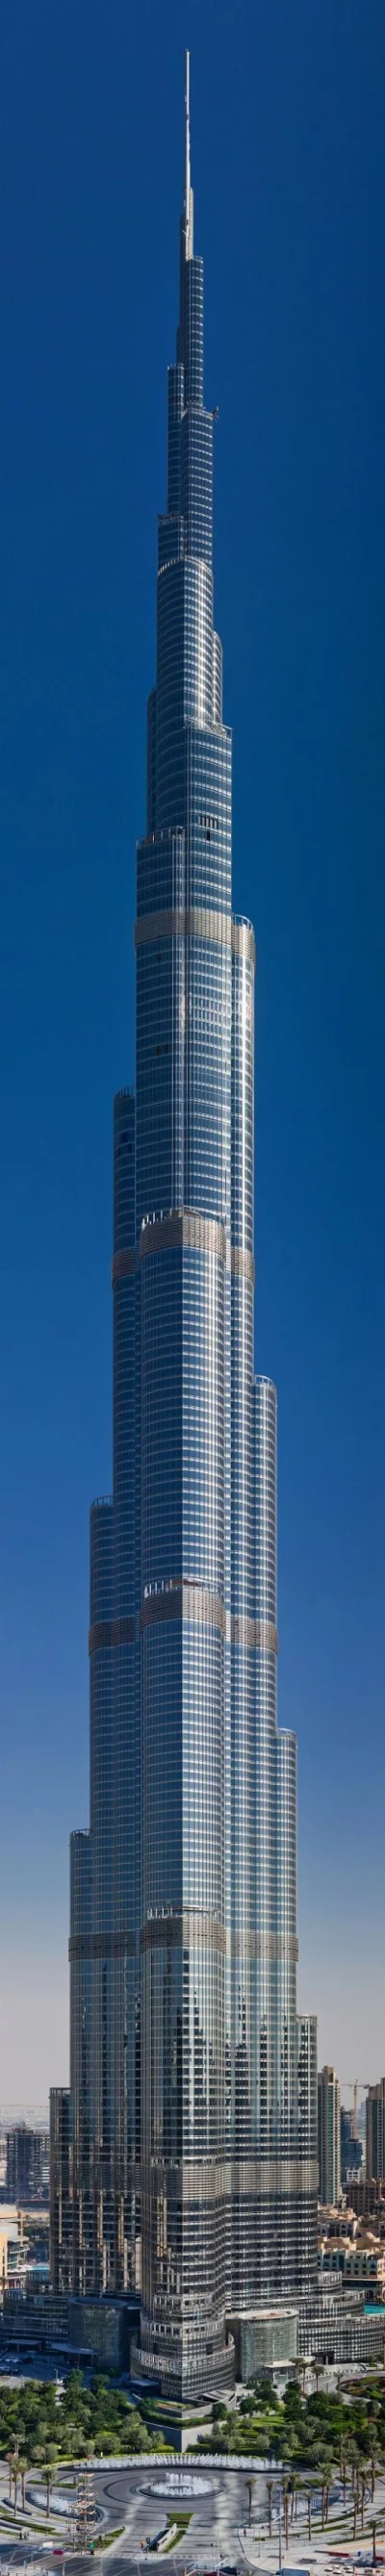 8o9p0 - Jest wysoko, no #!$%@? jest wysoko.

Burj Khalifa - #dubaj